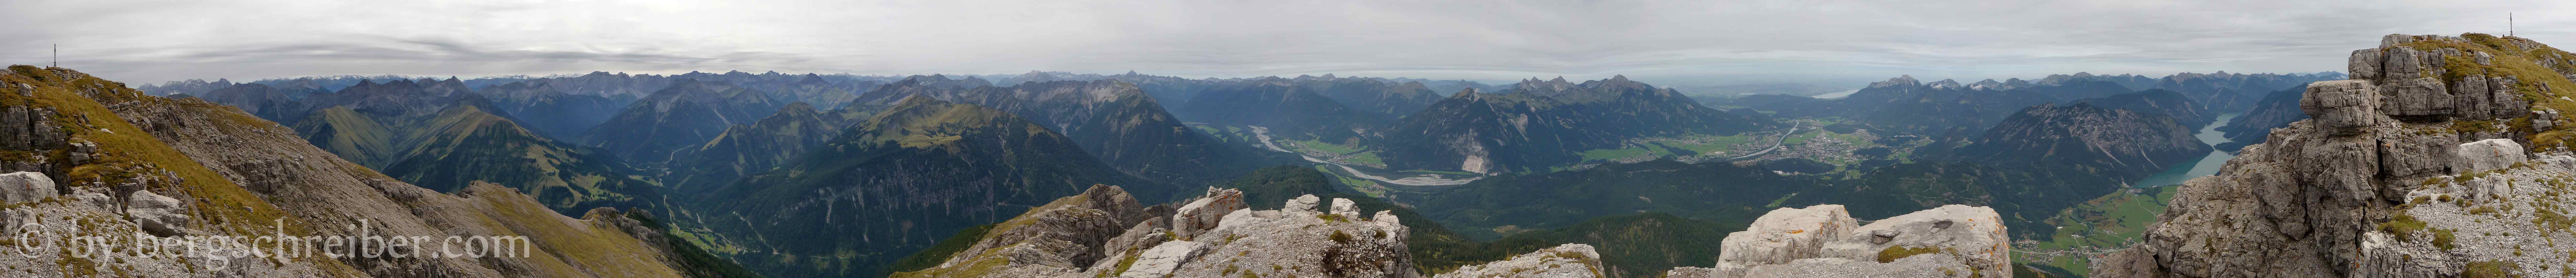 Thaneller 360° - Gipfelpanorama